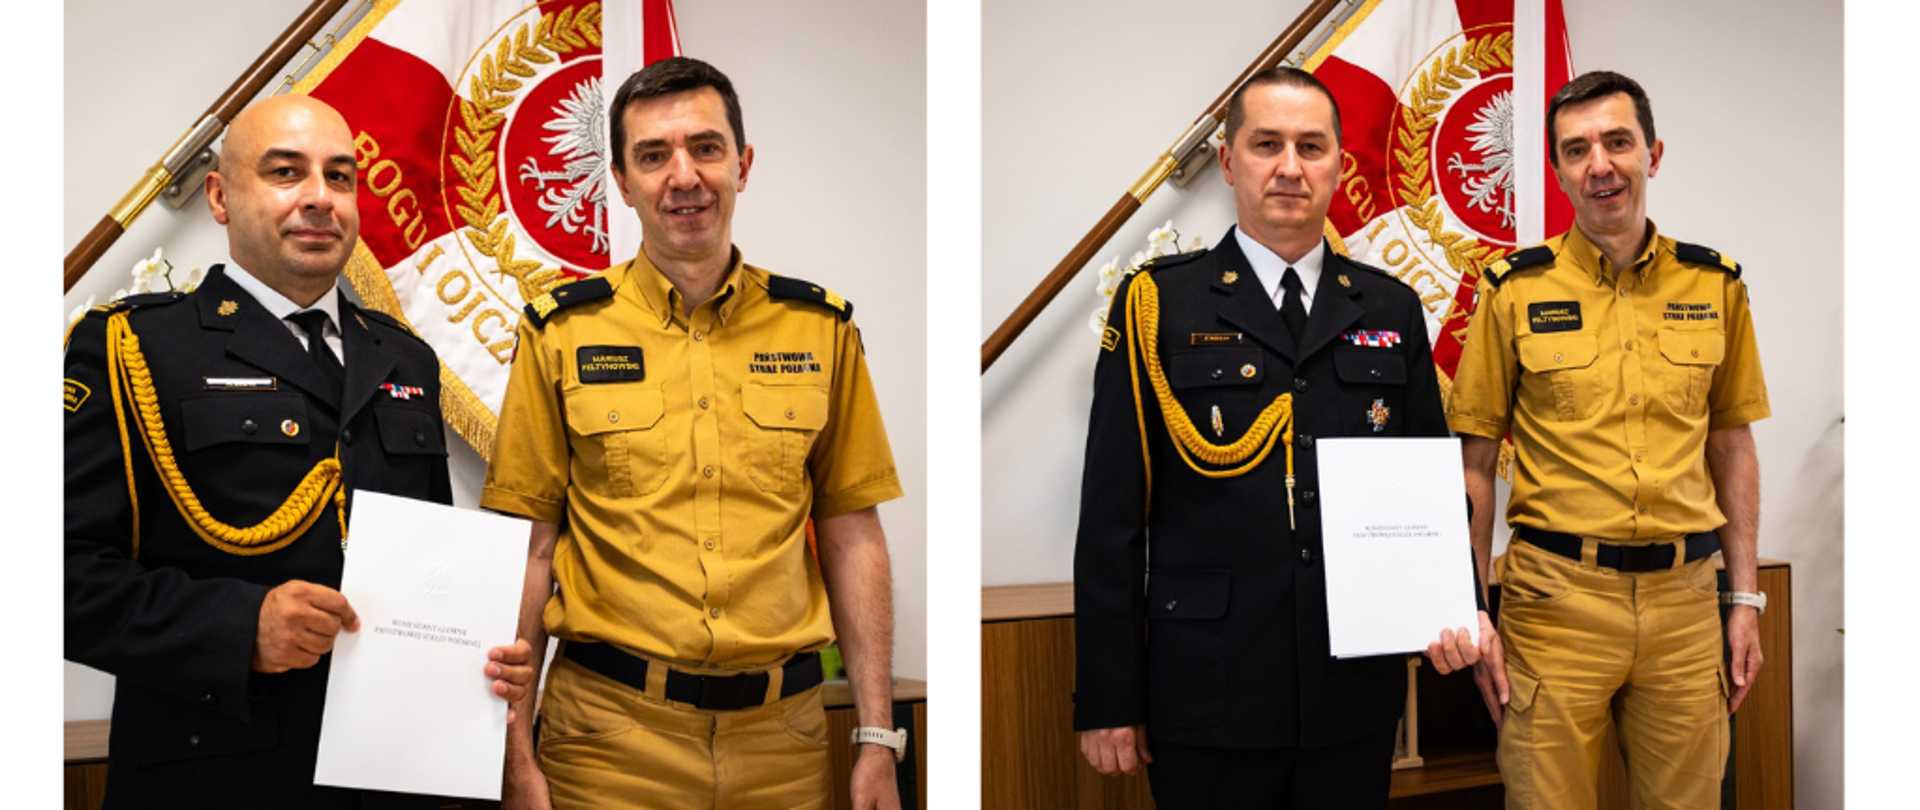 Kolaż dwóch zdjęć , na których jest Komendant Główny PSP wraz z awansowanymi oficerami PSP